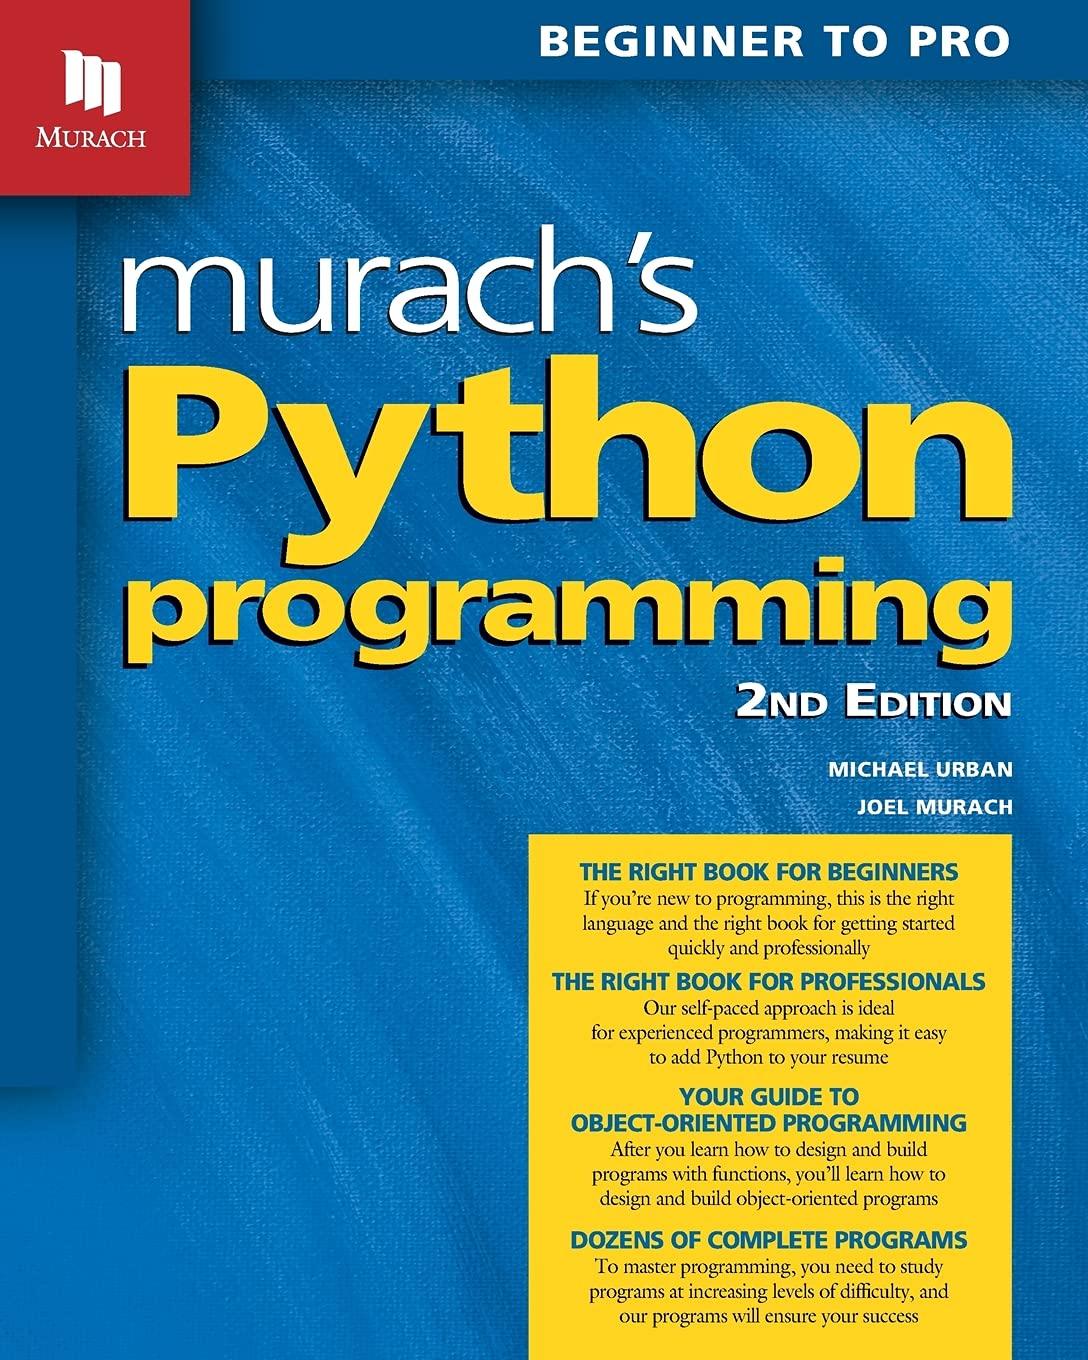 murach's python programming 2nd edition joel murach, michael urban 1943872740, 978-1943872749